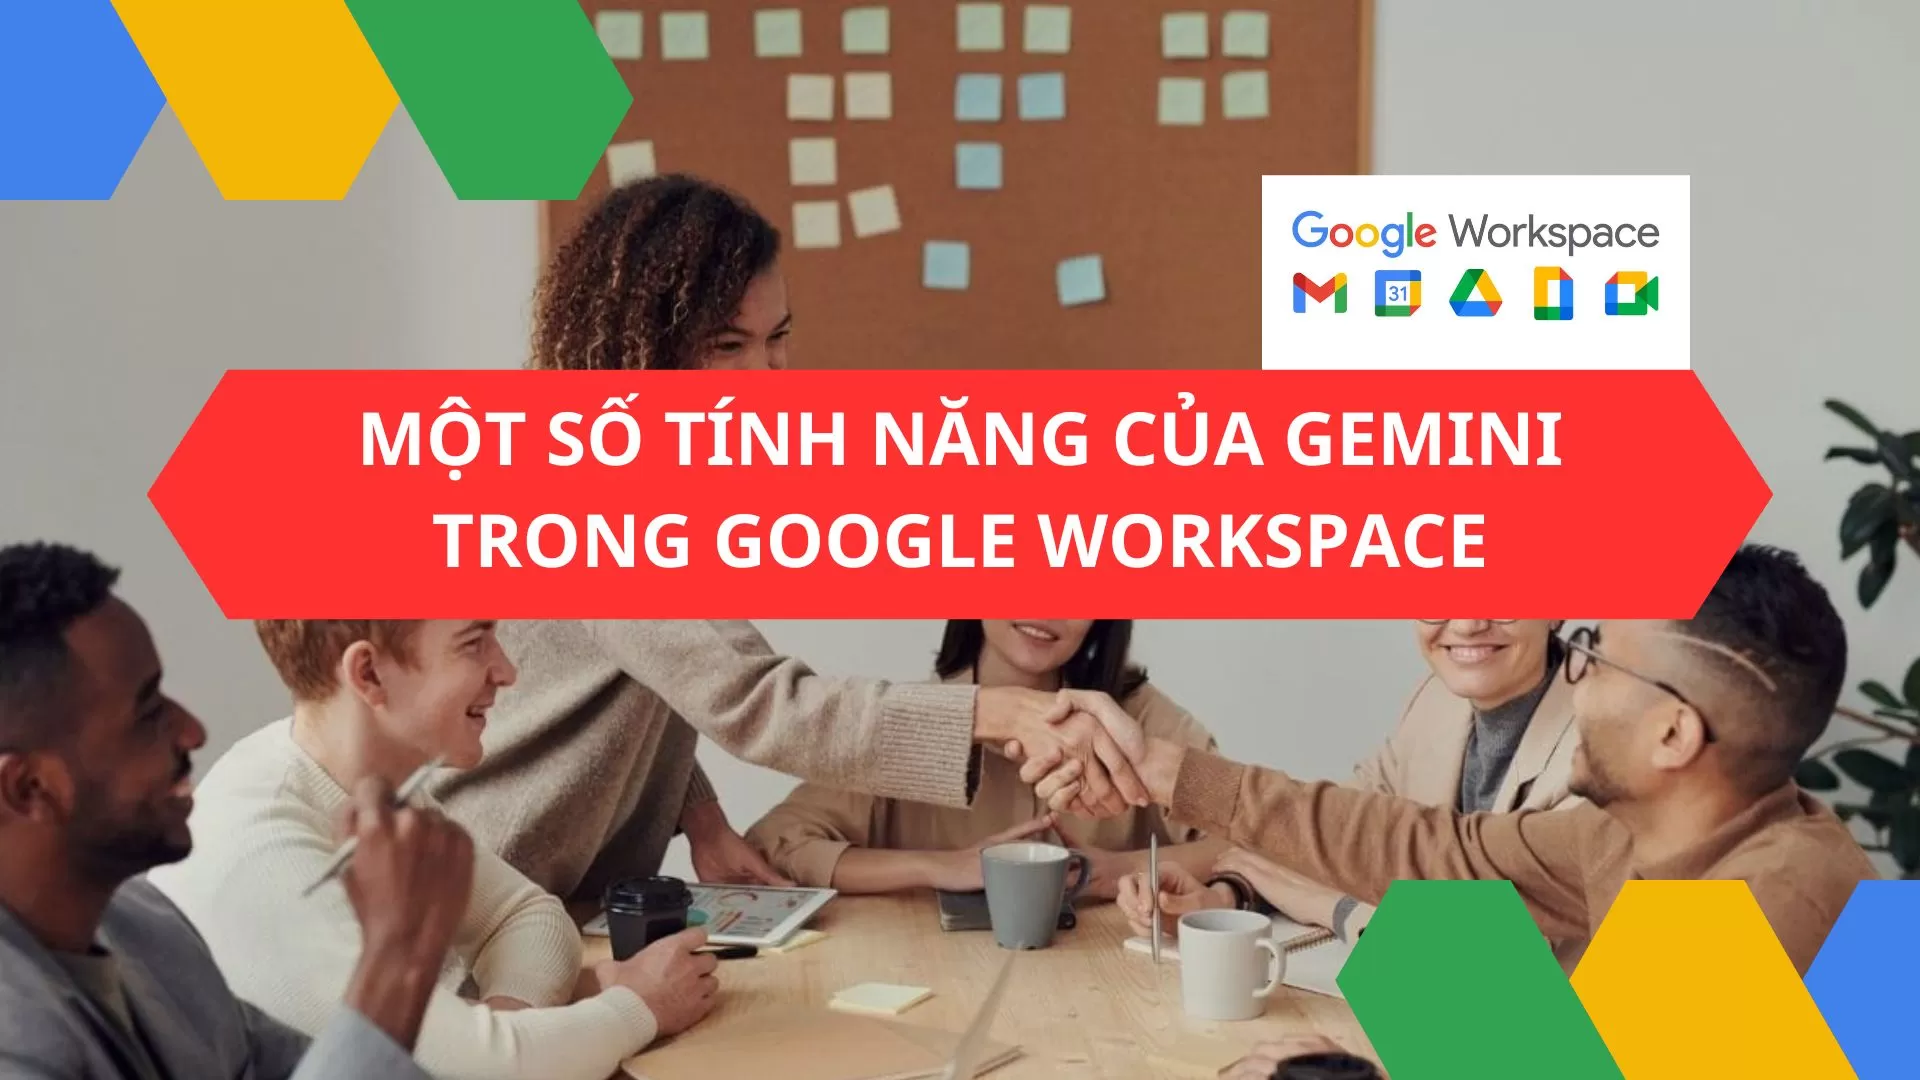 4 tính năng nổi bật của Gemini trong Google Workspace